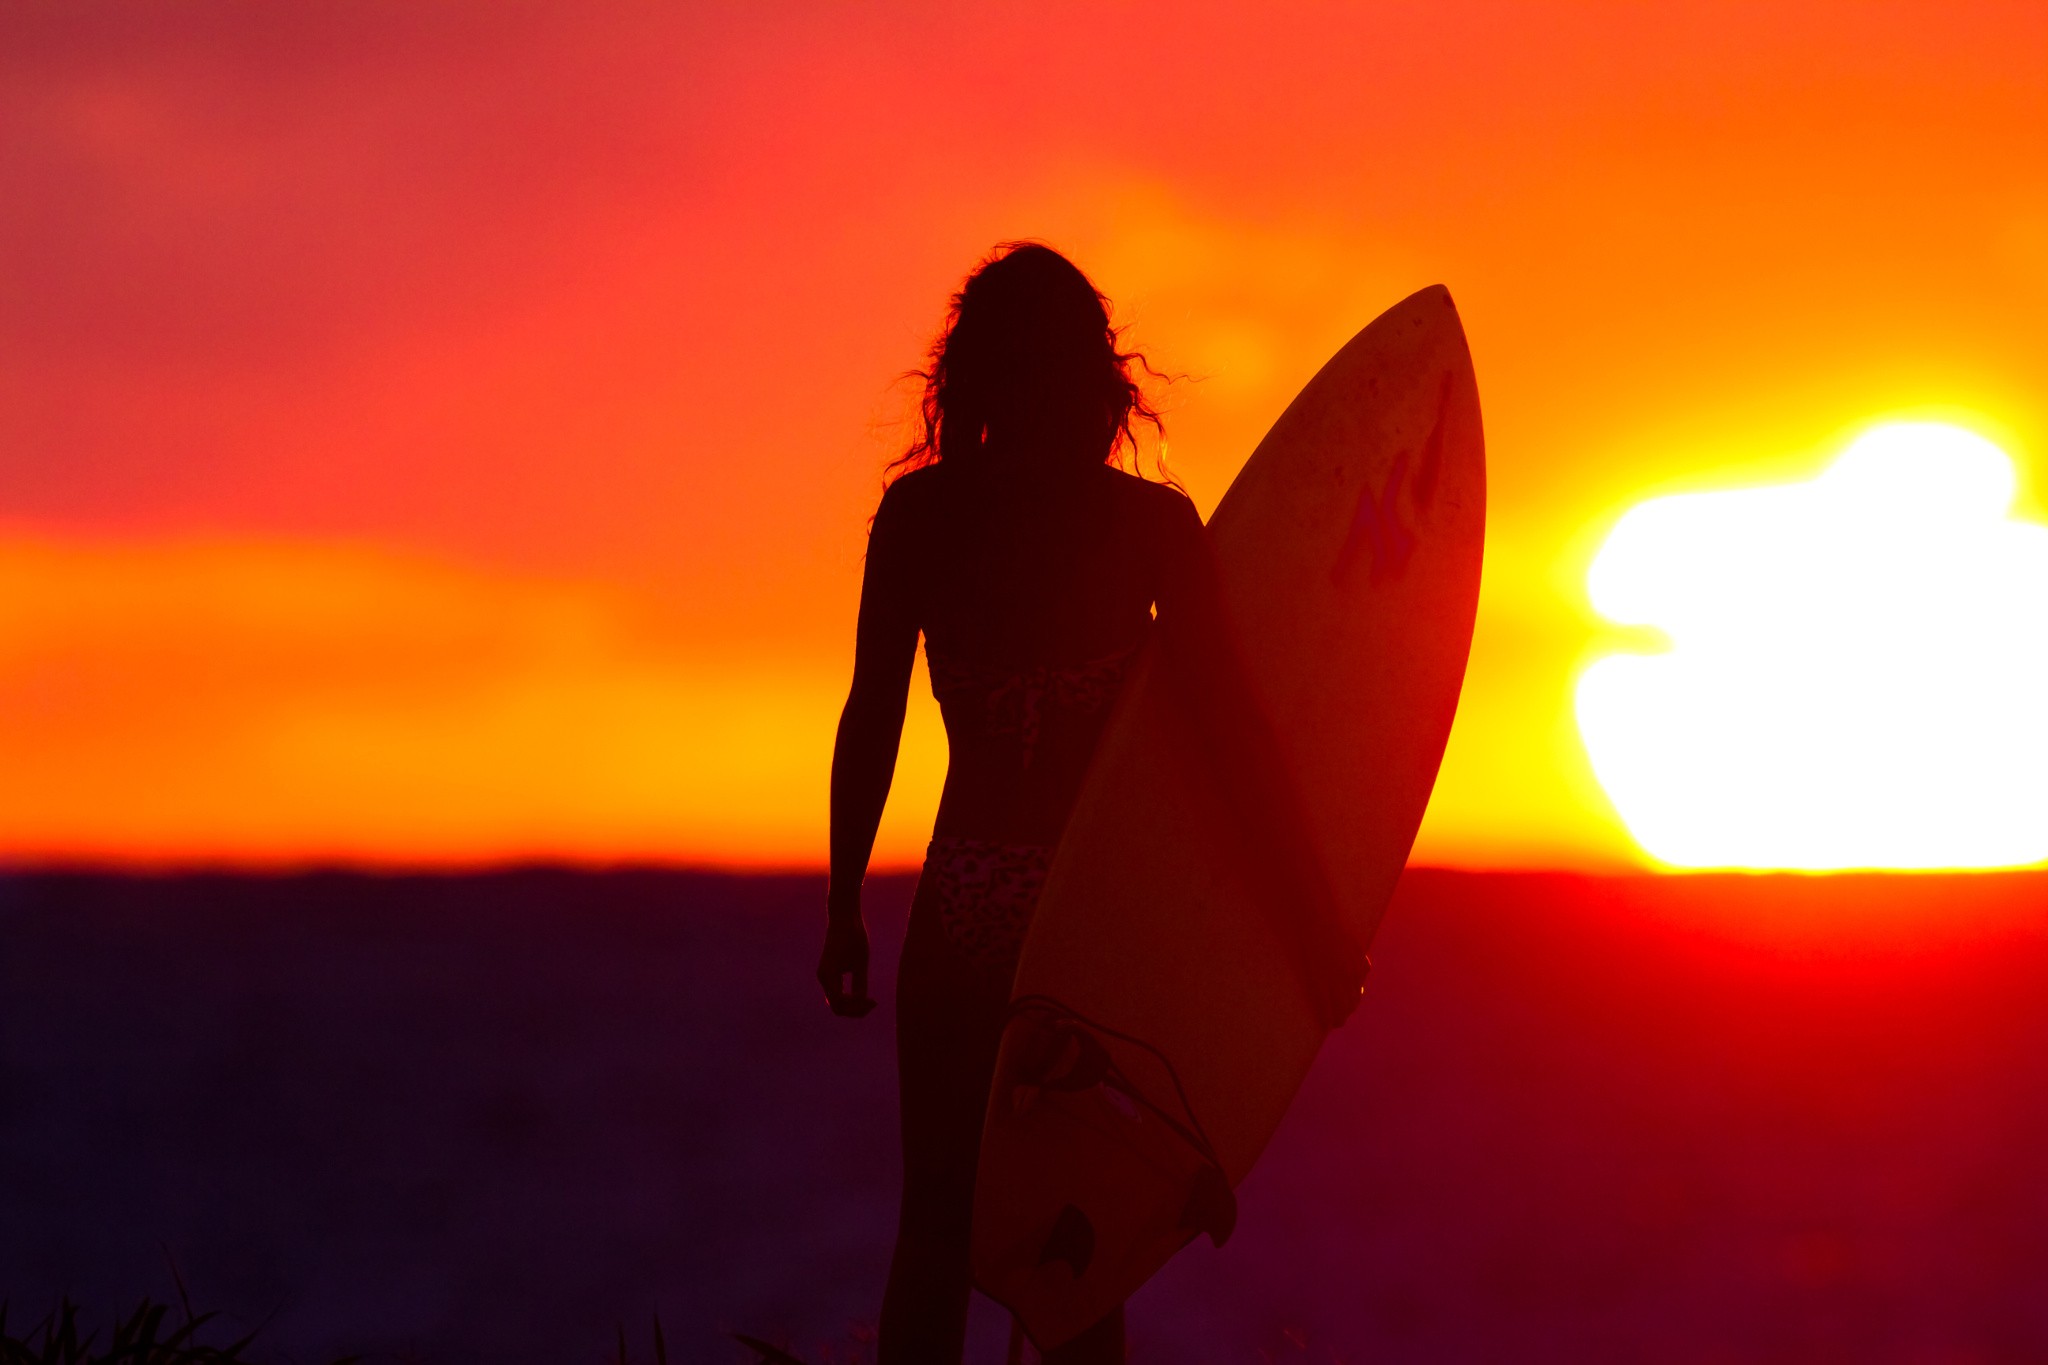 People 2048x1365 women Sun surfing orange sky sky surfboards women outdoors model standing bikini swimwear low light